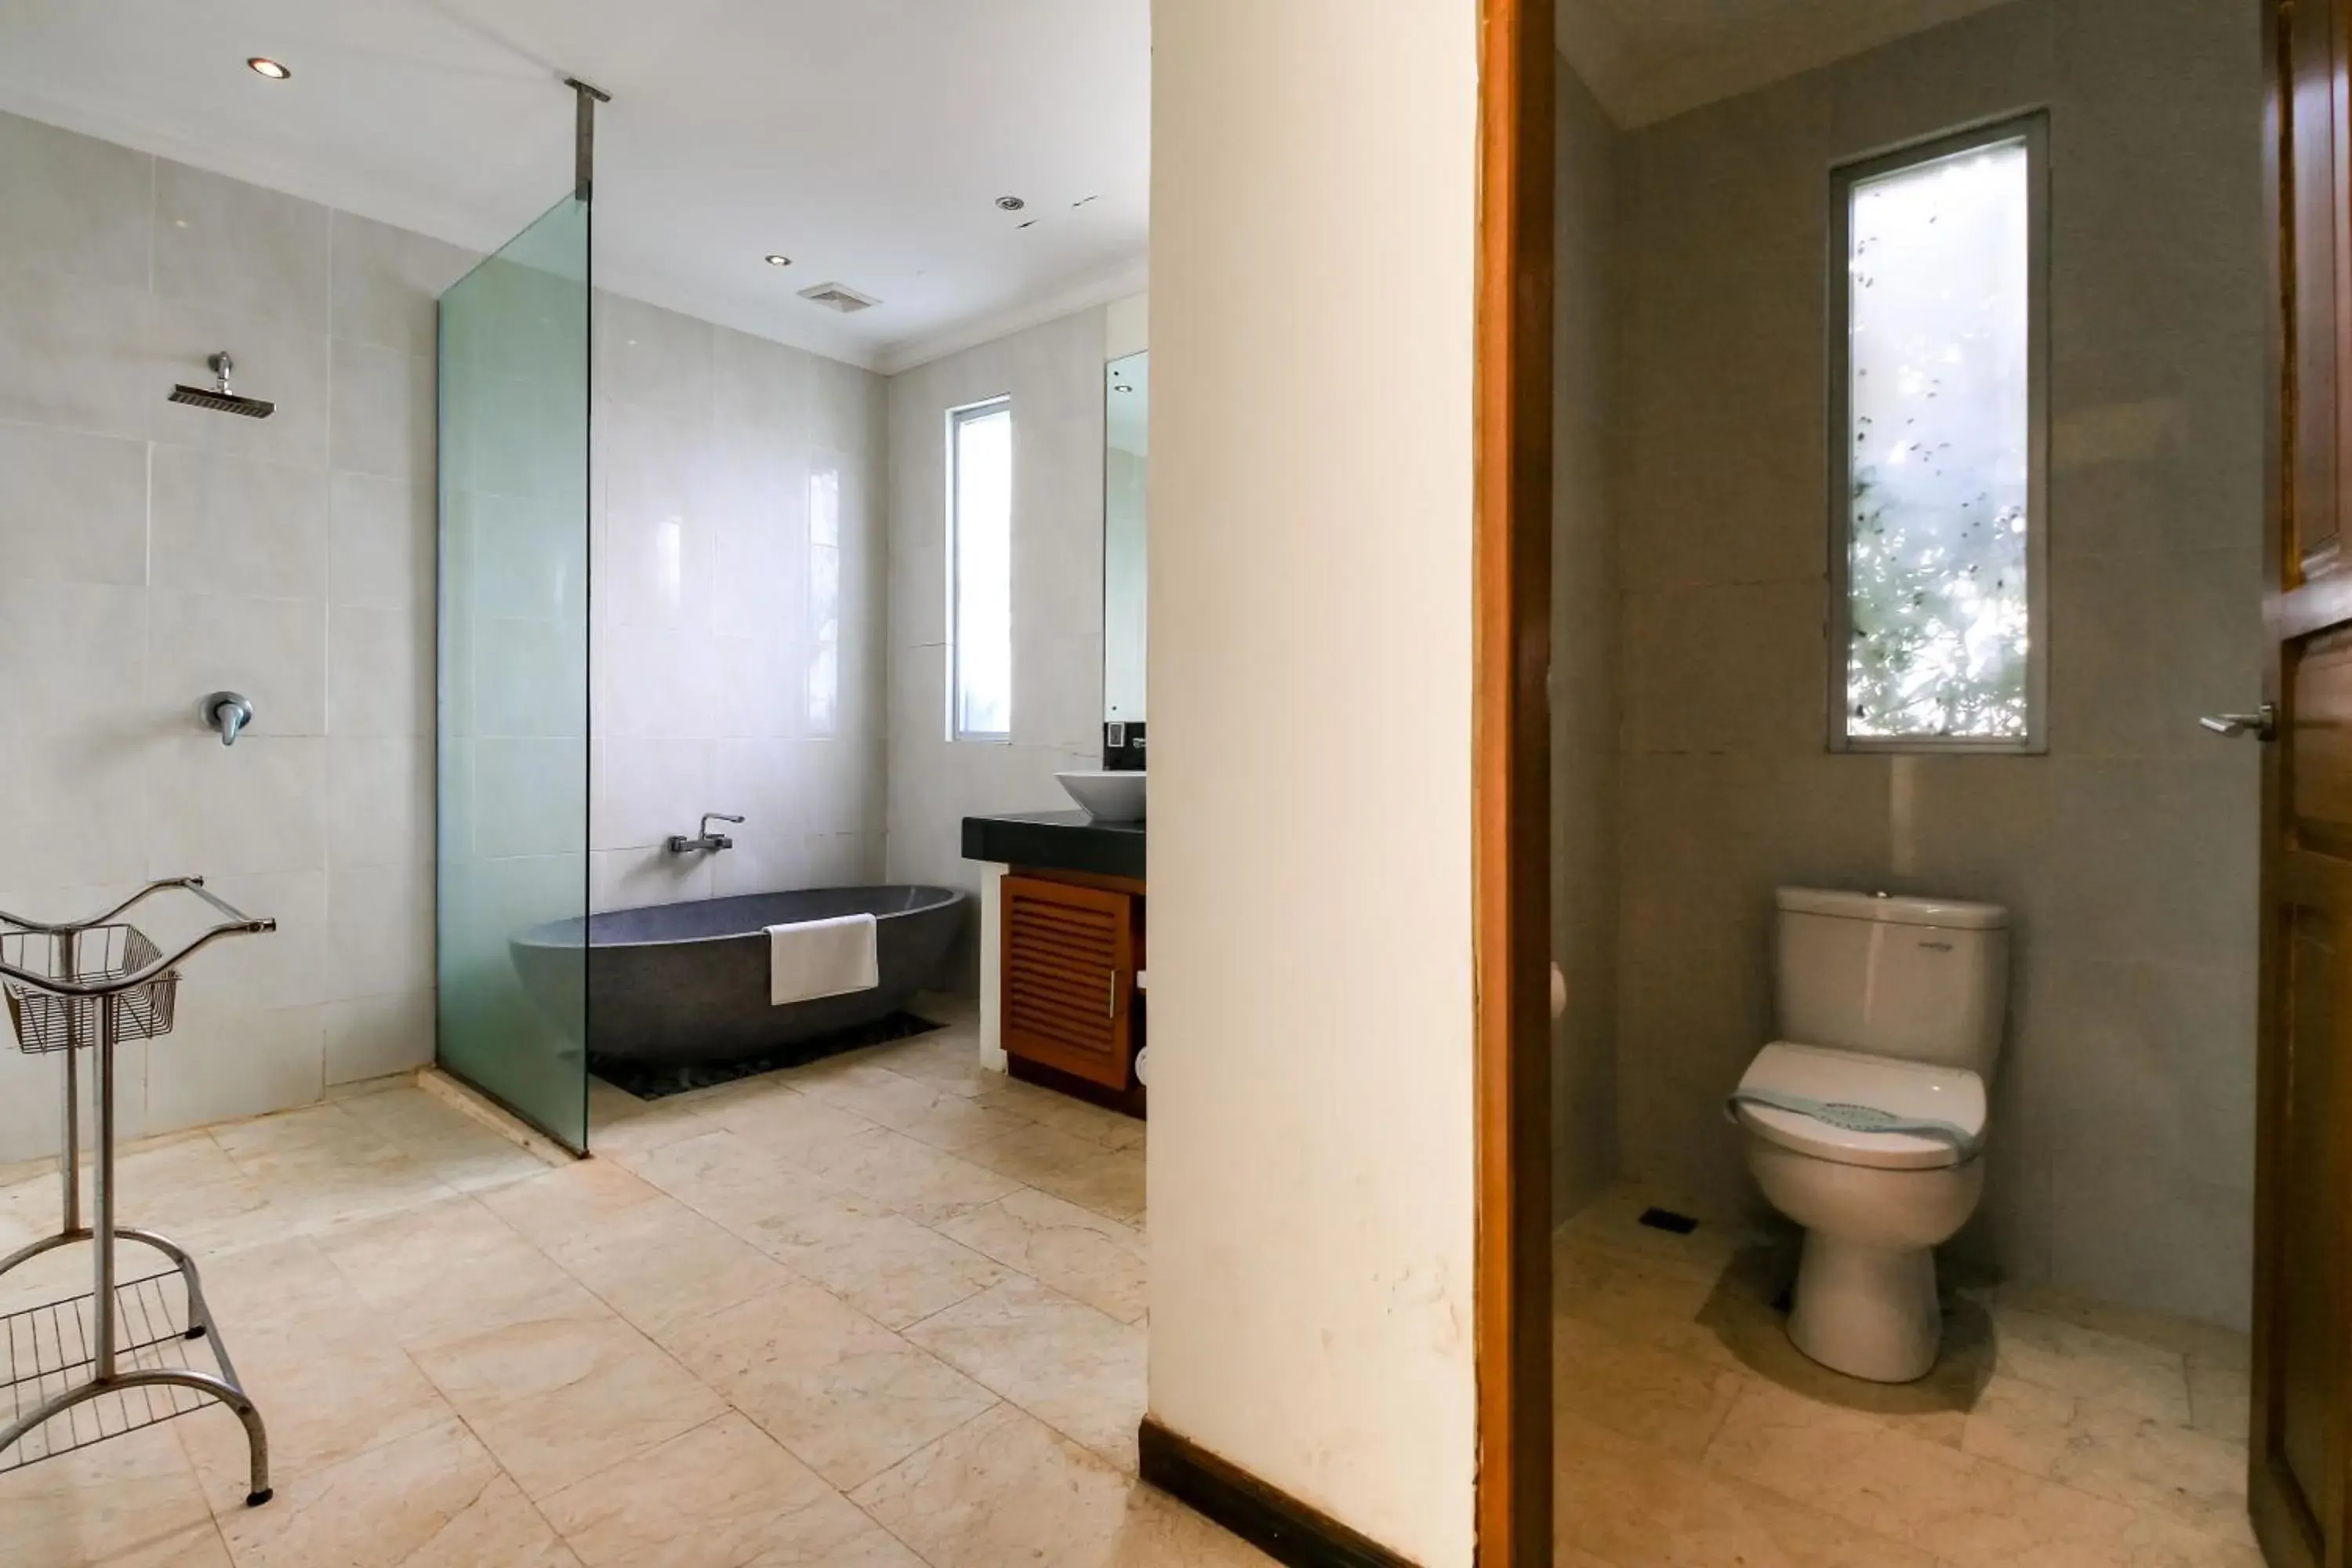 Toilet, Bathroom in Aleesha Villas and Suites